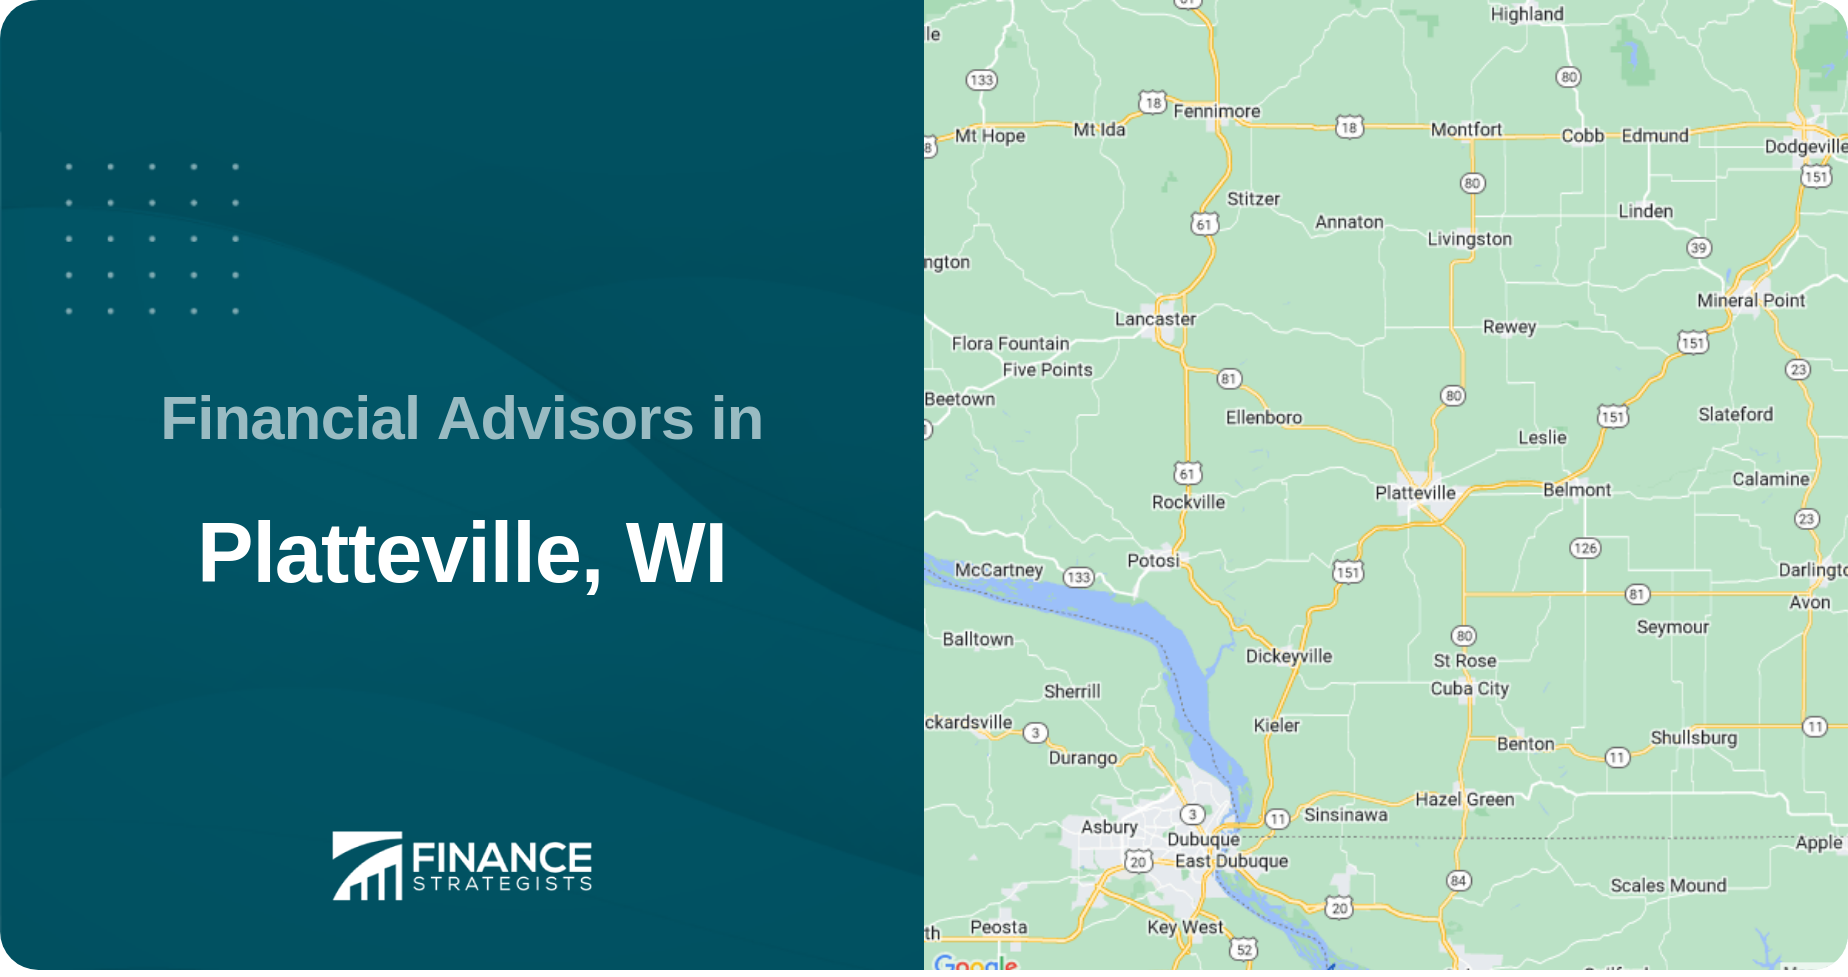 Financial Advisors in Platteville, WI